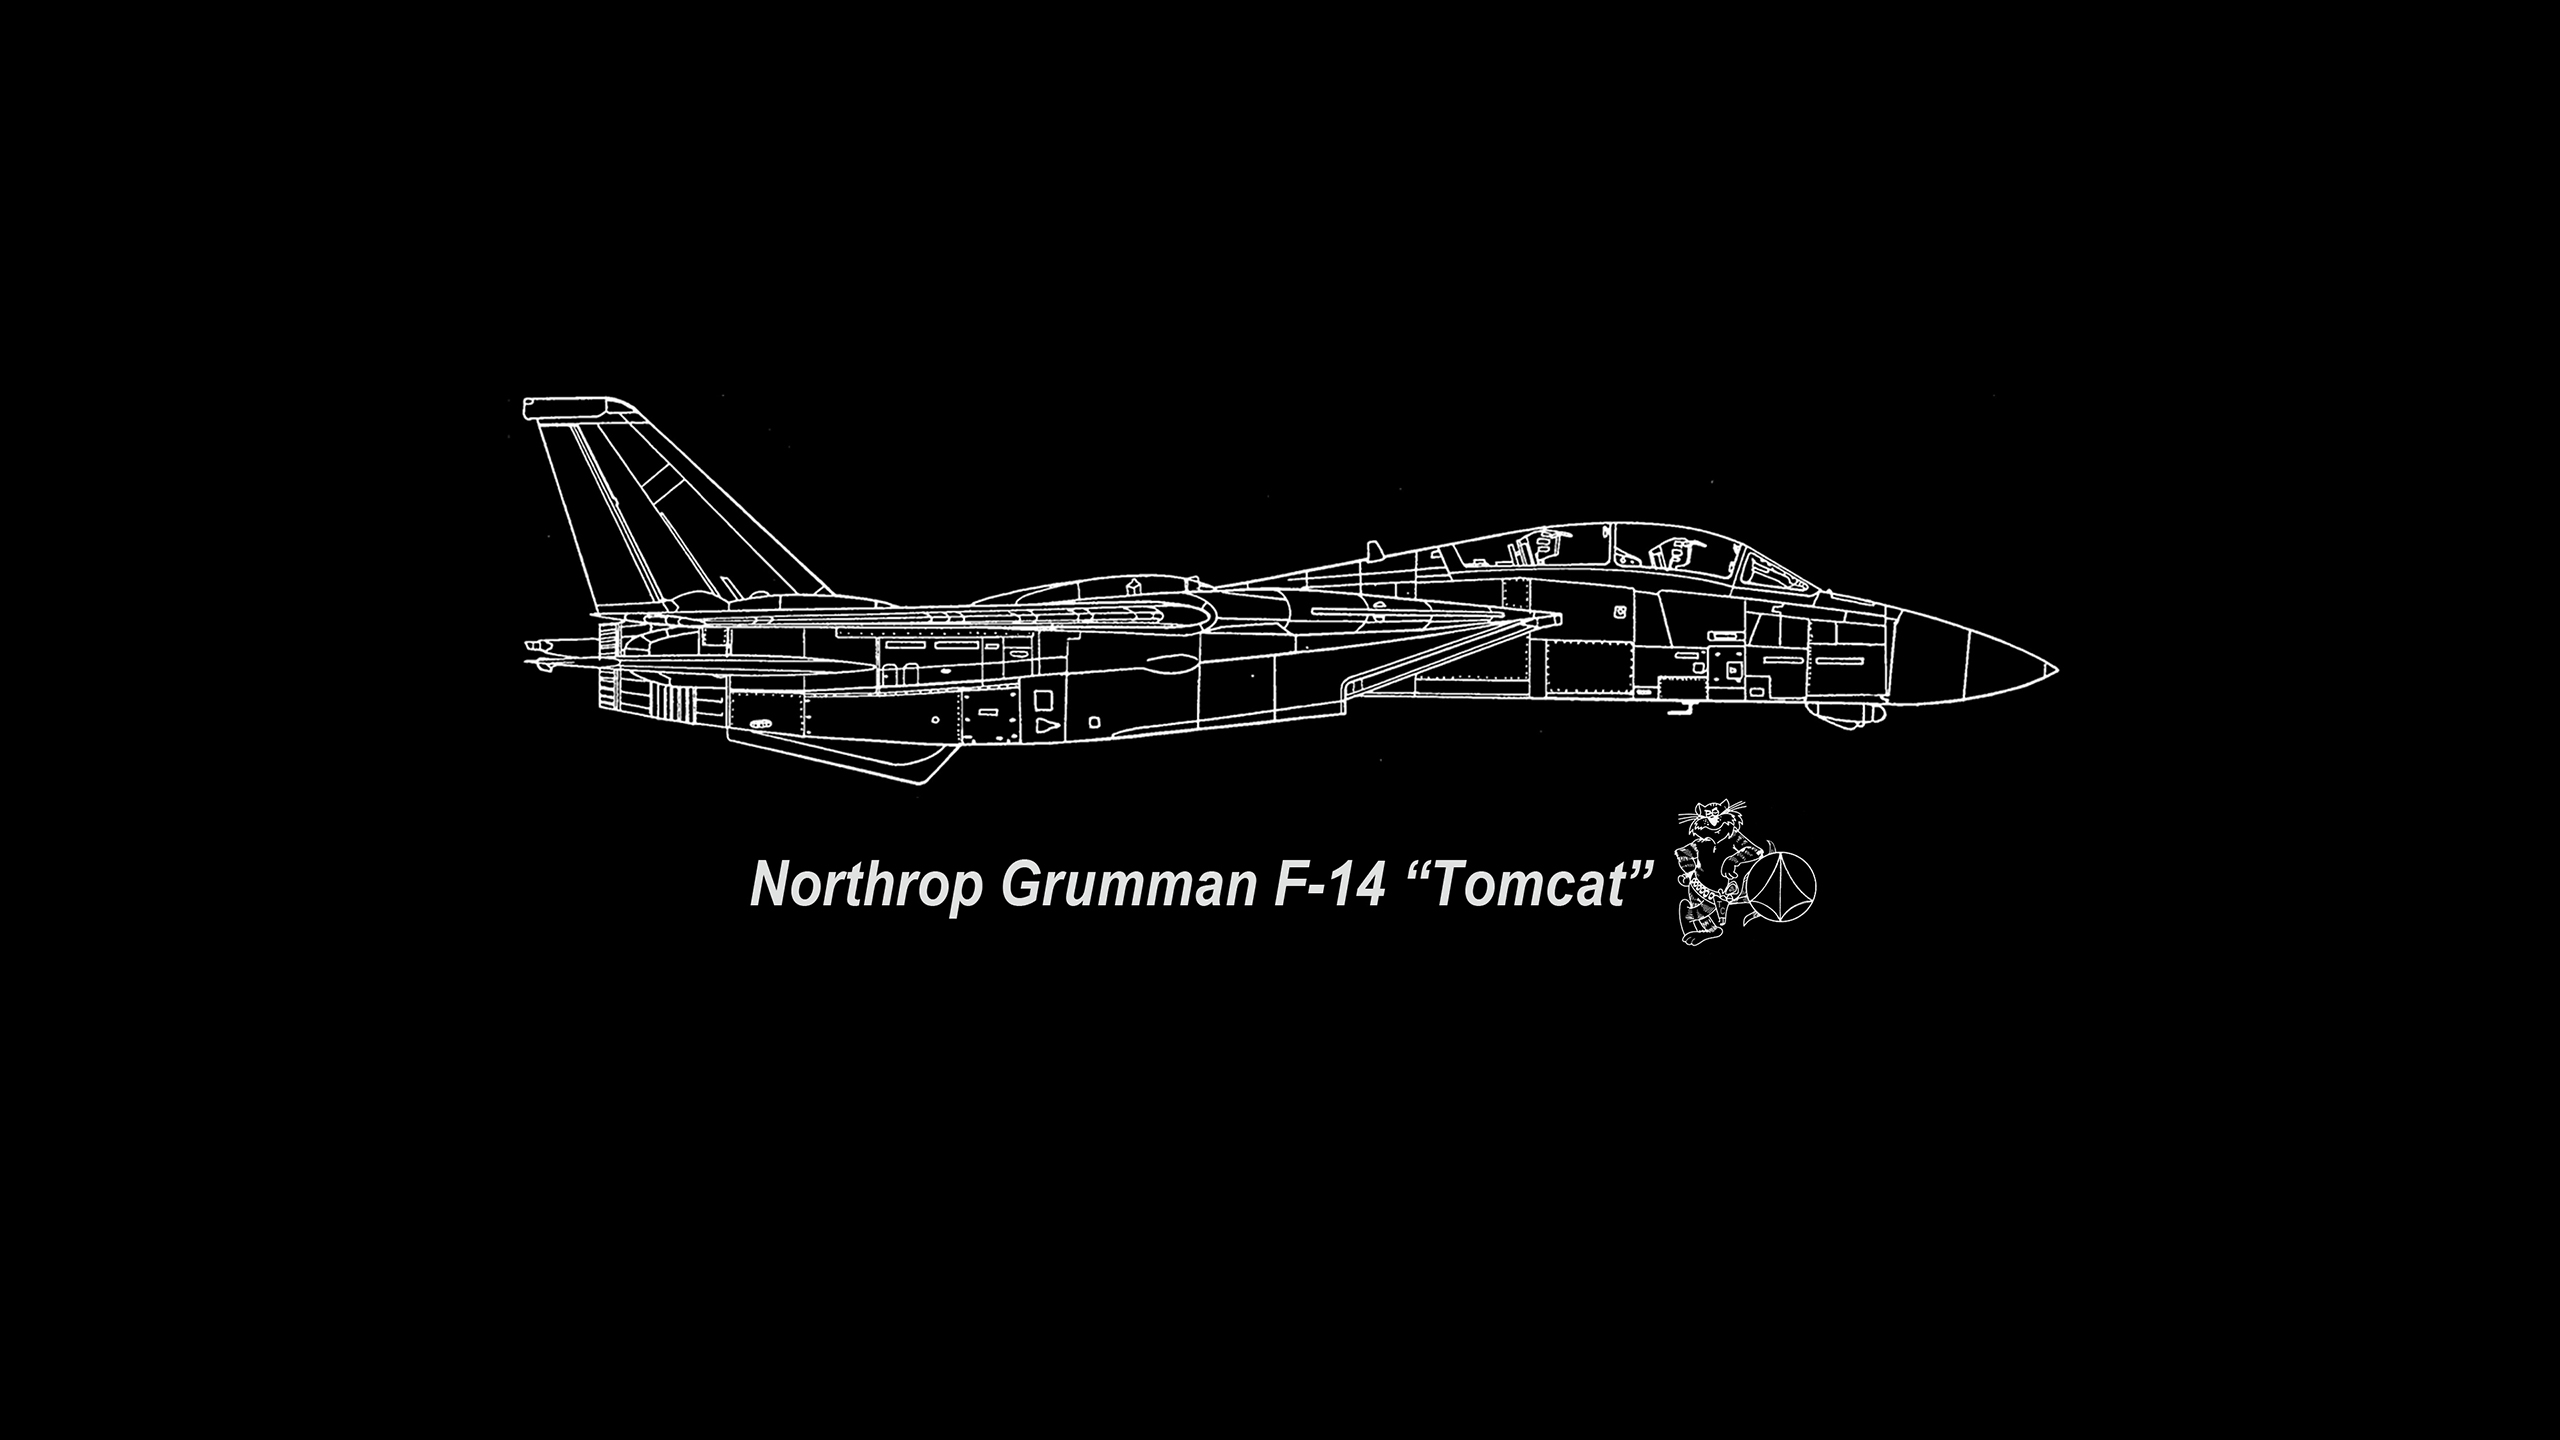 Grumman F 14 Tomcat F 14 Tomcat Jet Fighter United States Navy Airplane Wallpaper Resolution 2560x1440 Id Wallha Com